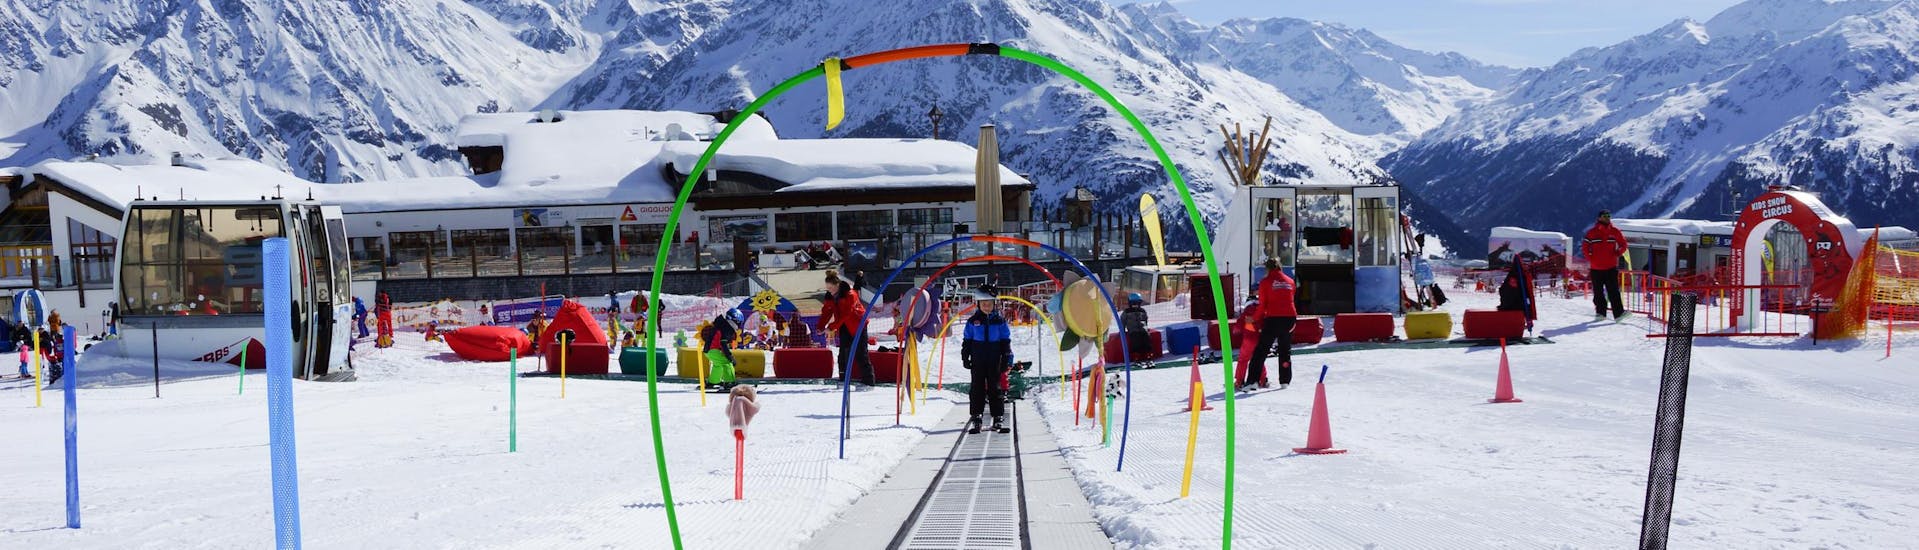 Clases de esquí para niños (4-8 años) de todos los niveles incl. alquiler de esquís.